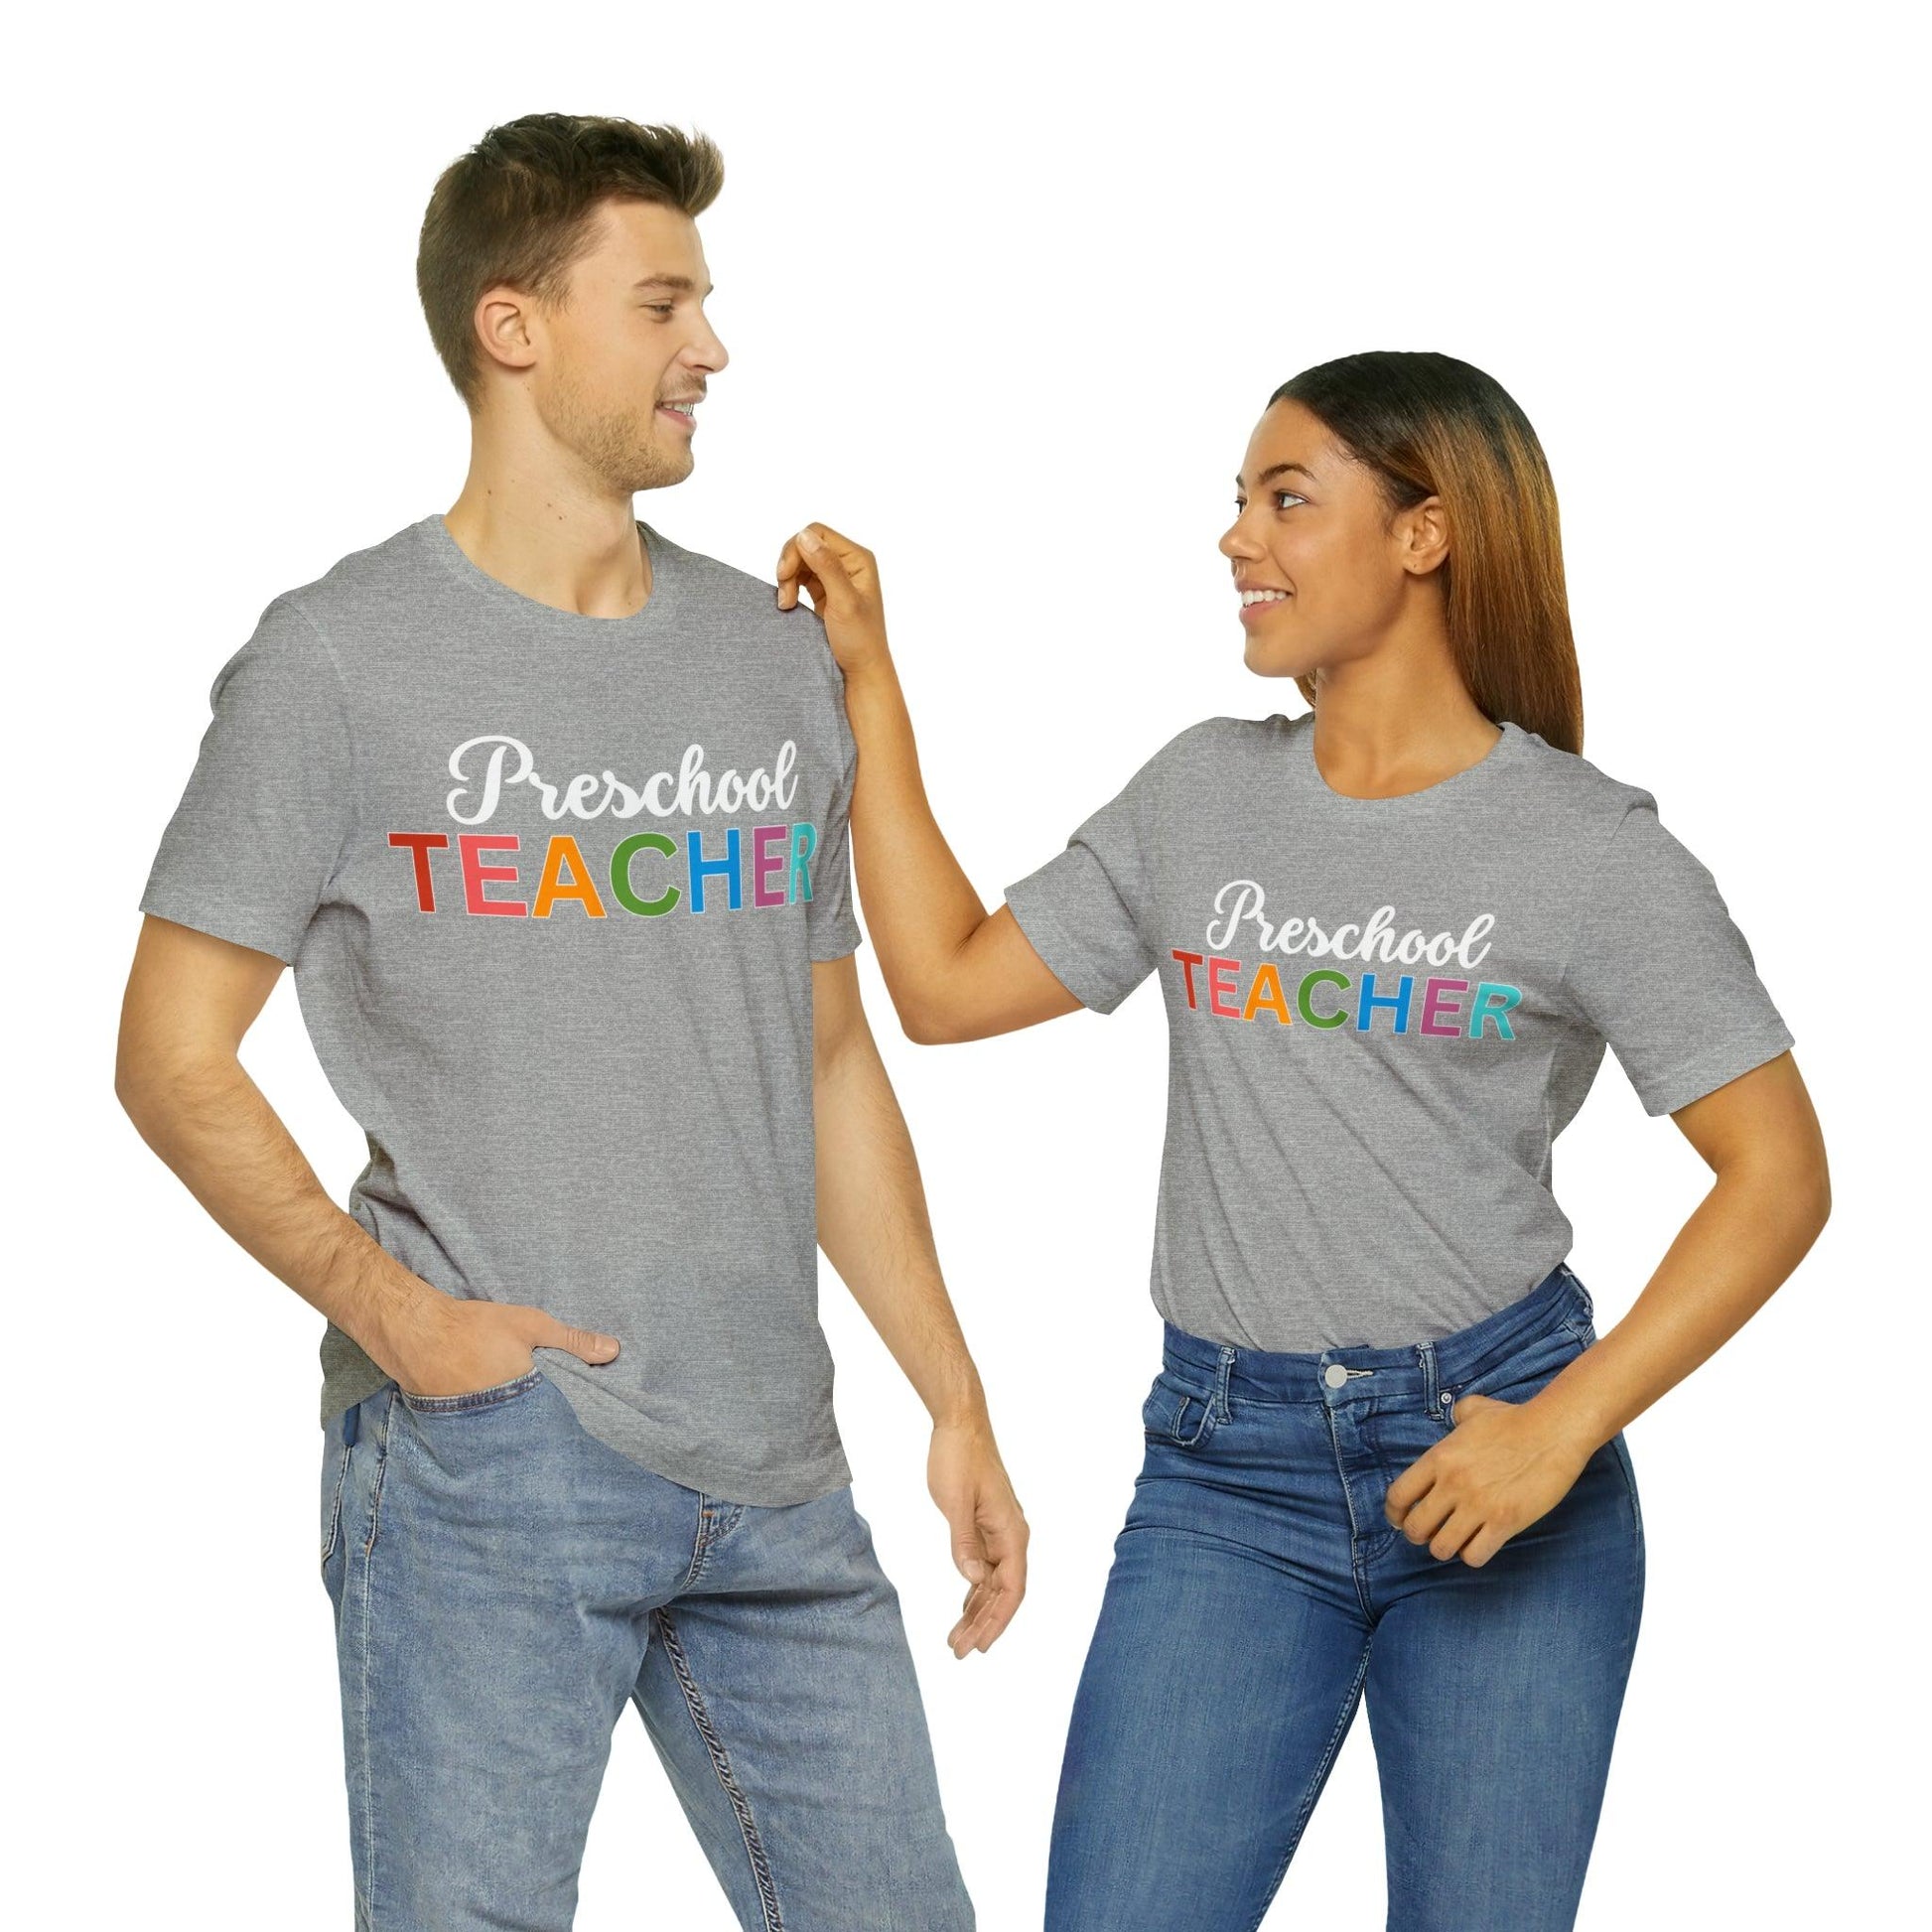 Preschool Teacher Shirt, Teacher Shirt, Teacher Appreciation Gift for Teachers - Giftsmojo